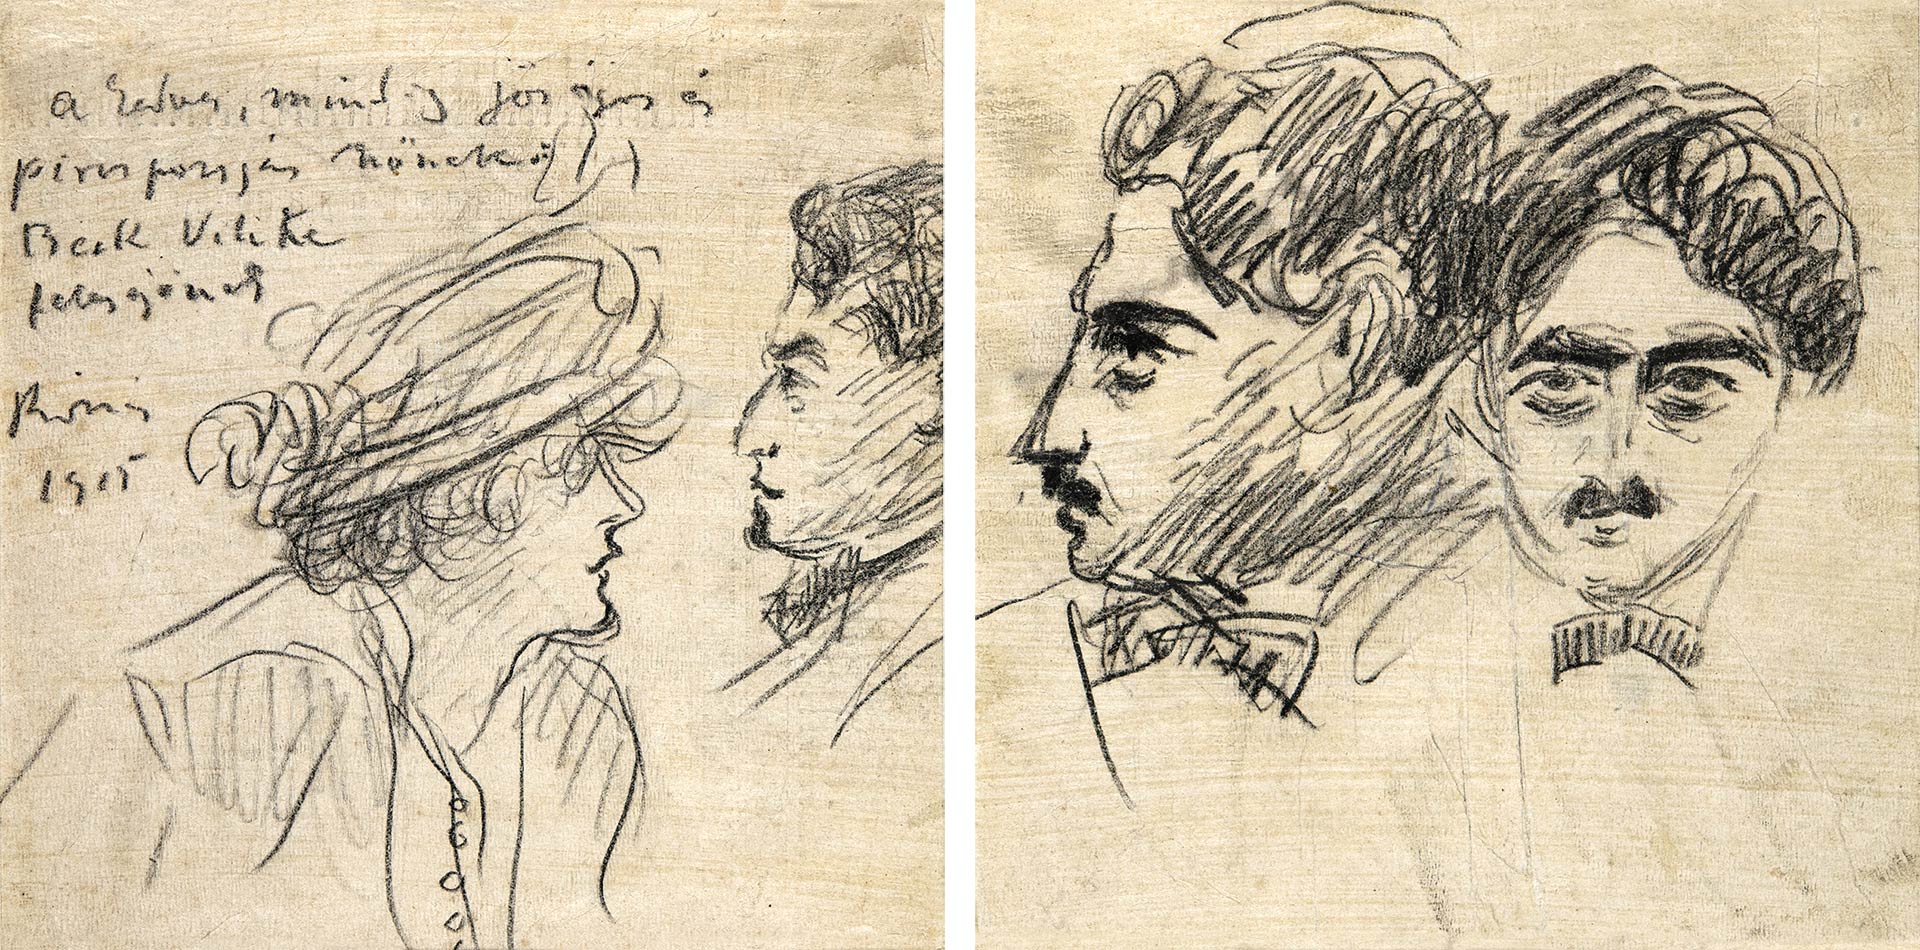 Rippl-Rónai József (1861-1927) Kettős portré (Beck Vili és felesége portréja), 1915